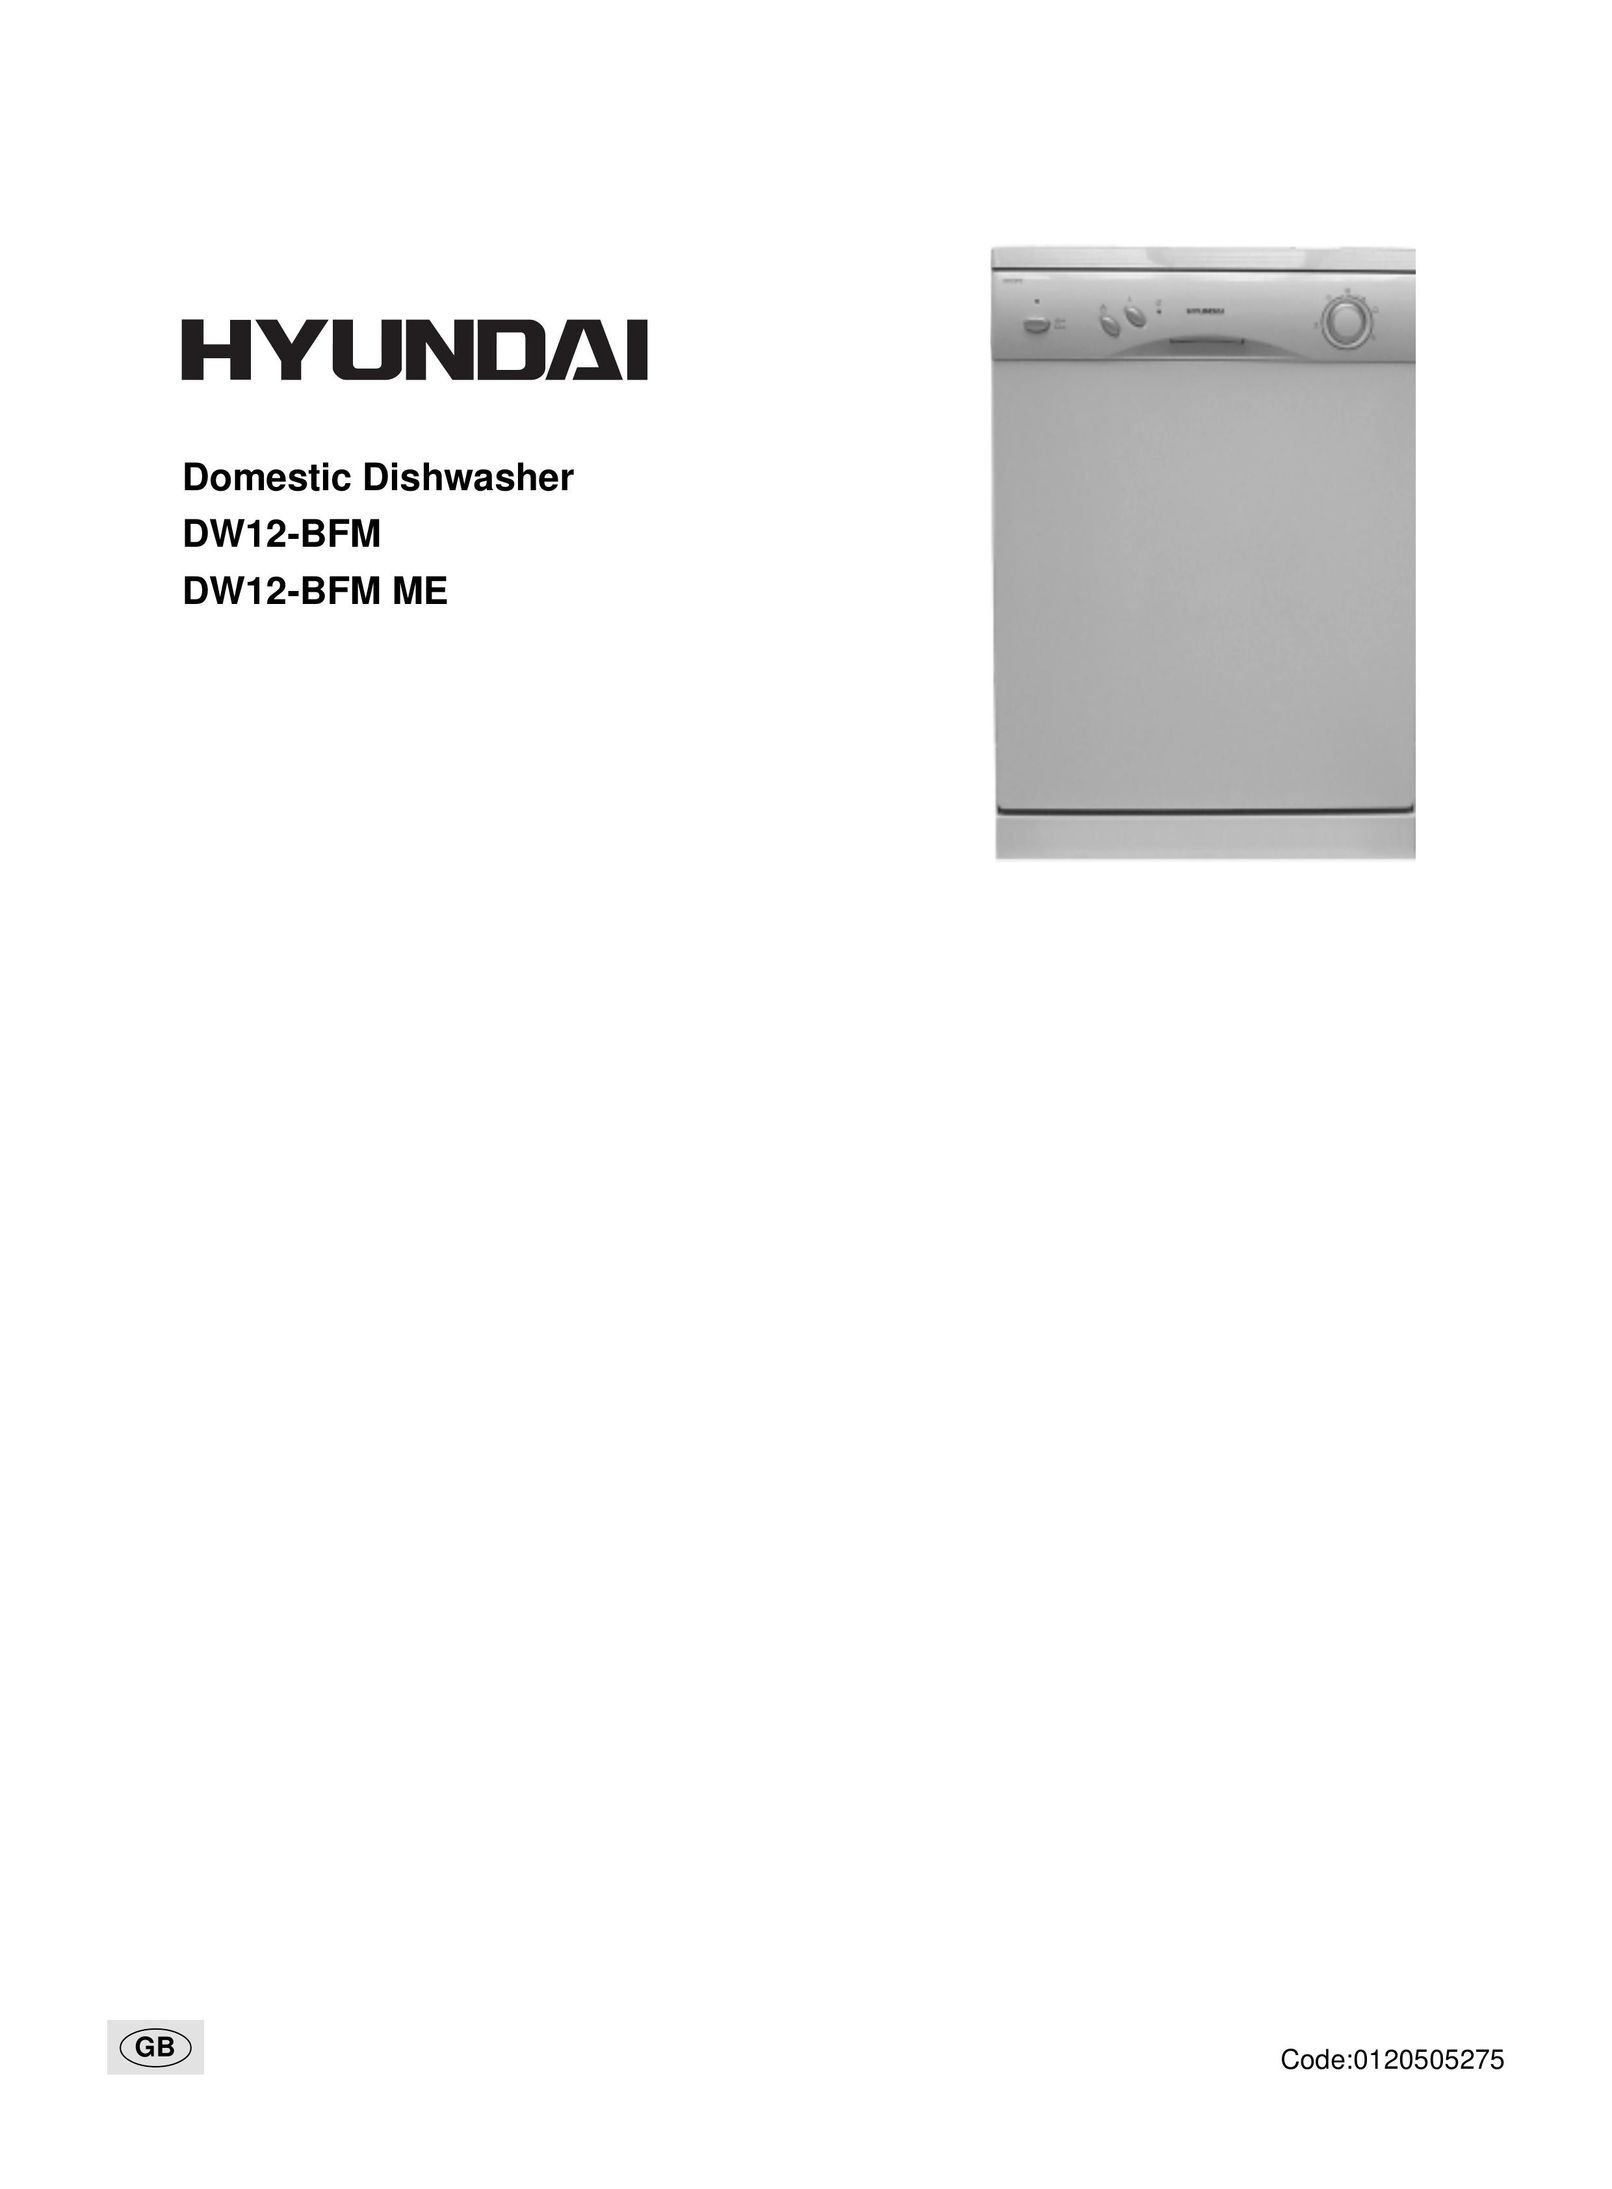 Hyundai IT DW12-BFM ME Dishwasher User Manual